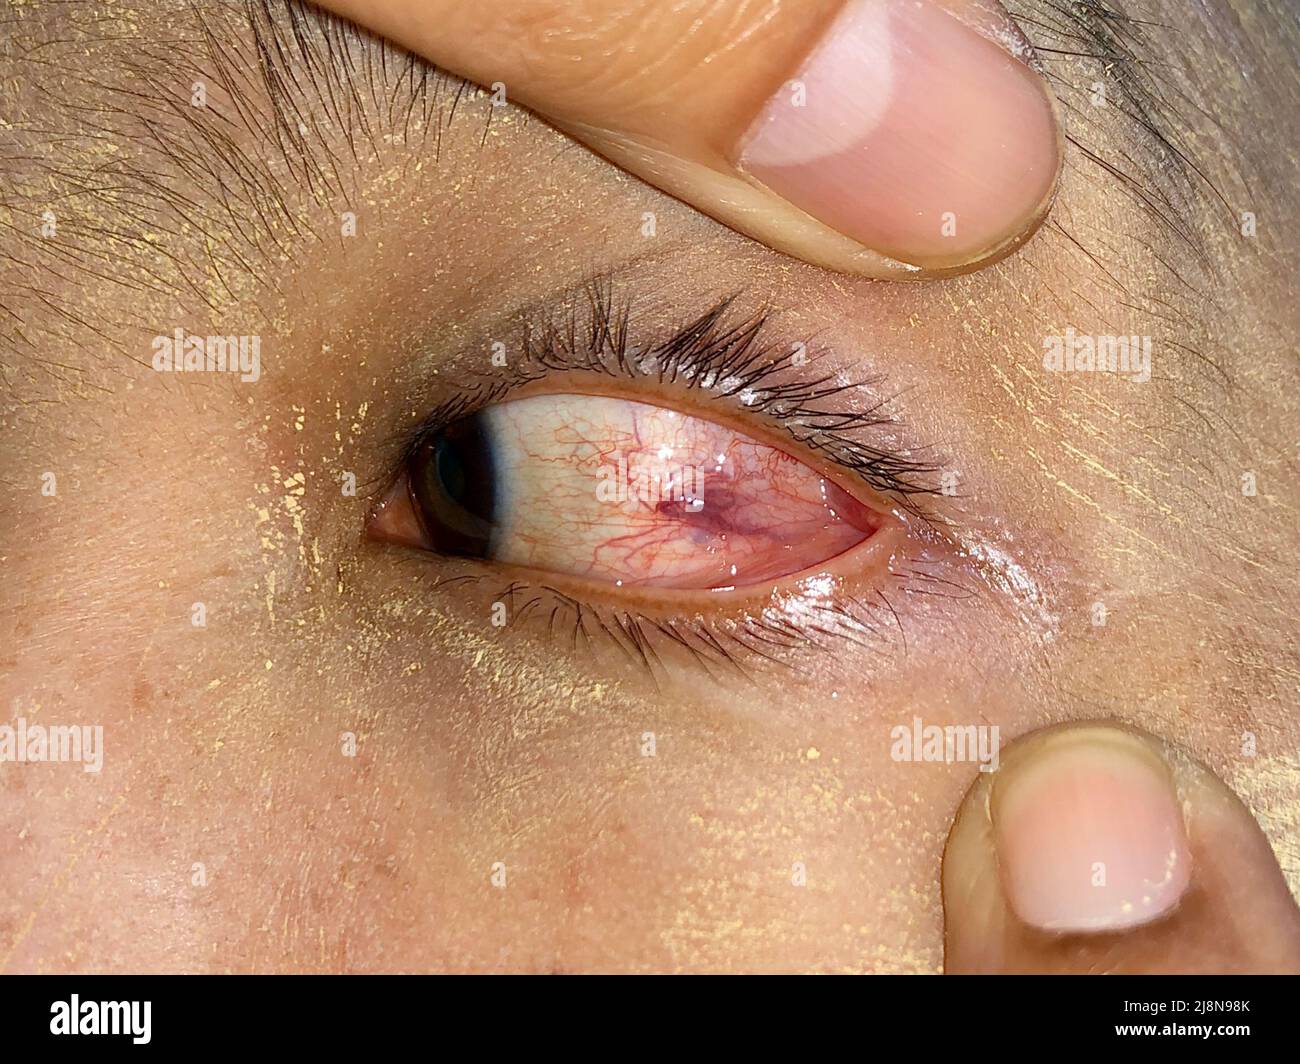 Okuläre Larva migrans oder erweiterte Gefäße am linken Auge des südostasiatischen Mannes. Stockfoto